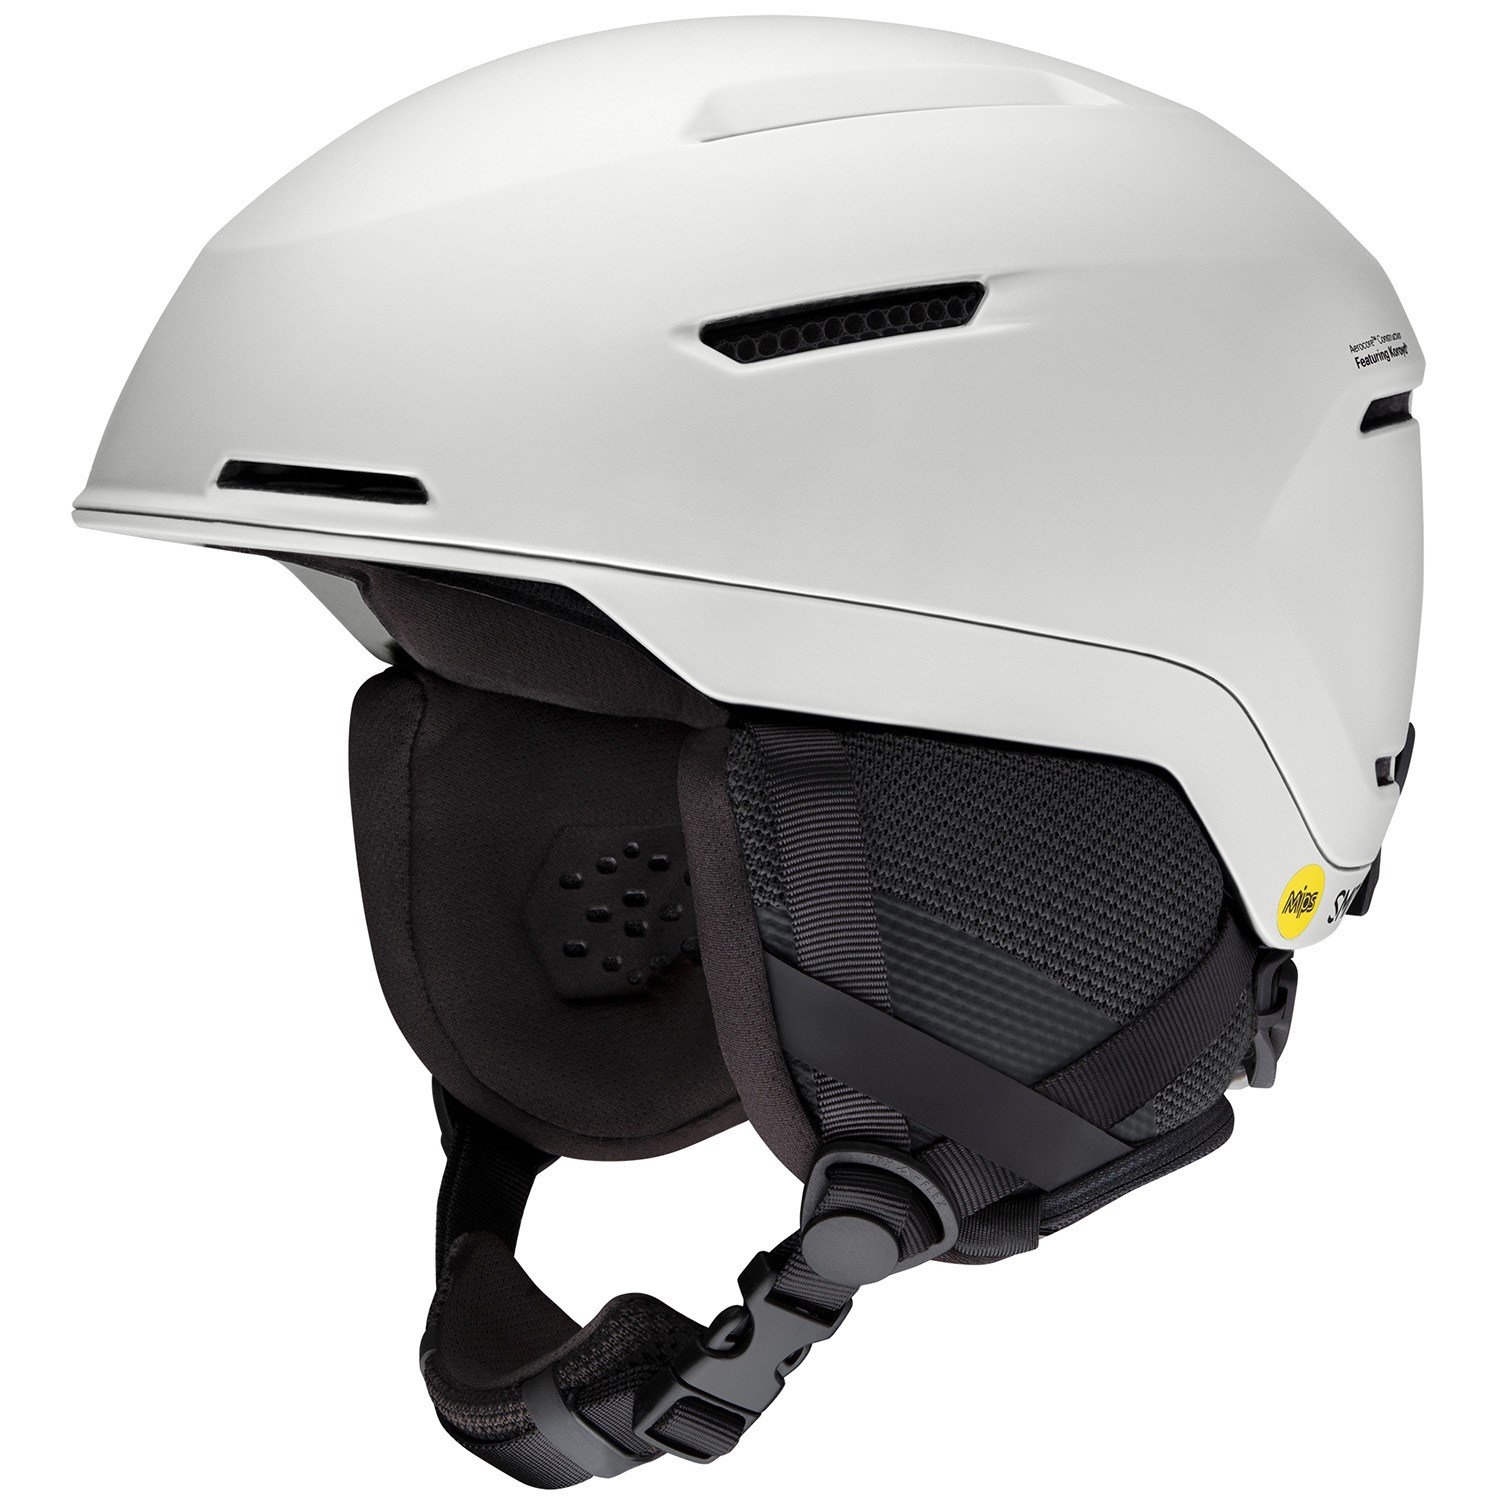 世界的に有名な 取寄 スミス サミット ミプス ヘルメット Smith Summit MIPS Helmet Matte VSSL 